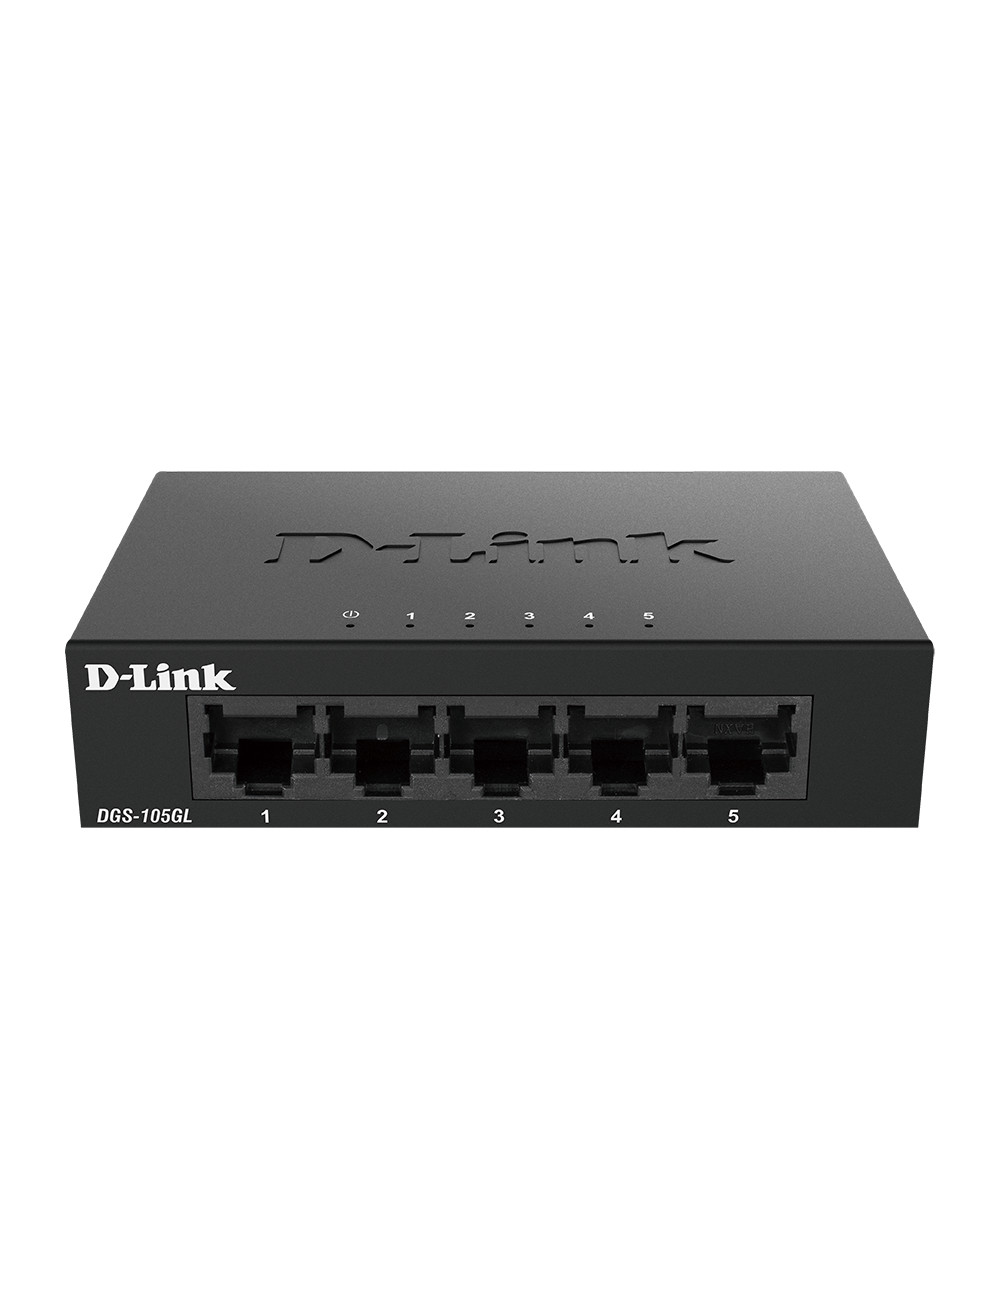 D-Link Ethernet Switch DGS-105GL/E Unmanaged, Desktop, 1 Gbps (RJ-45) ports quantity 5